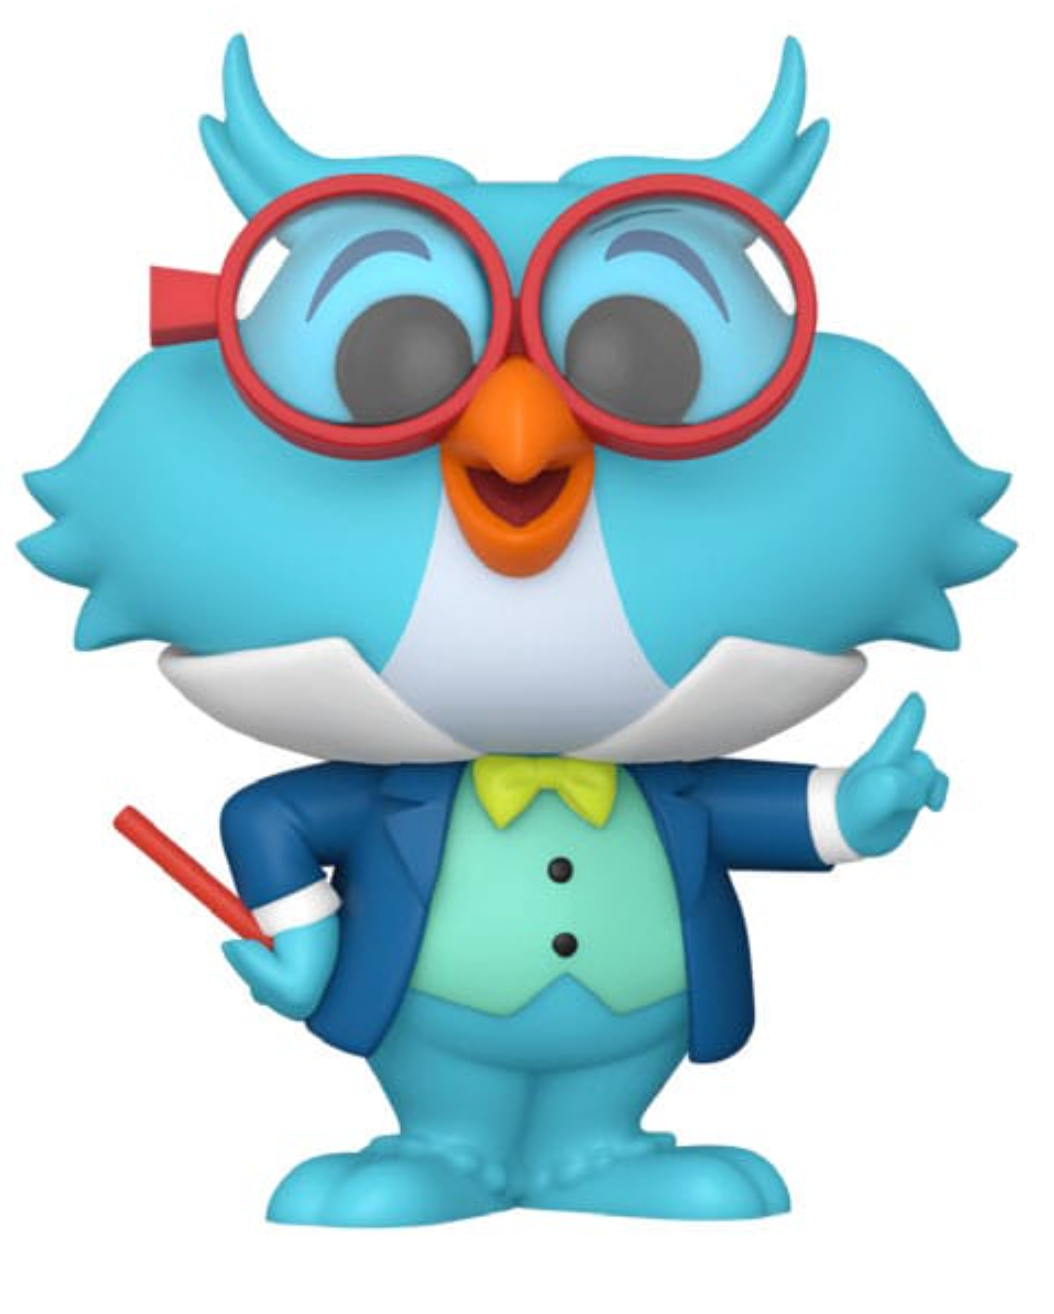 Professor Owl Disney Pop! Vinyl Figure *Exclusive